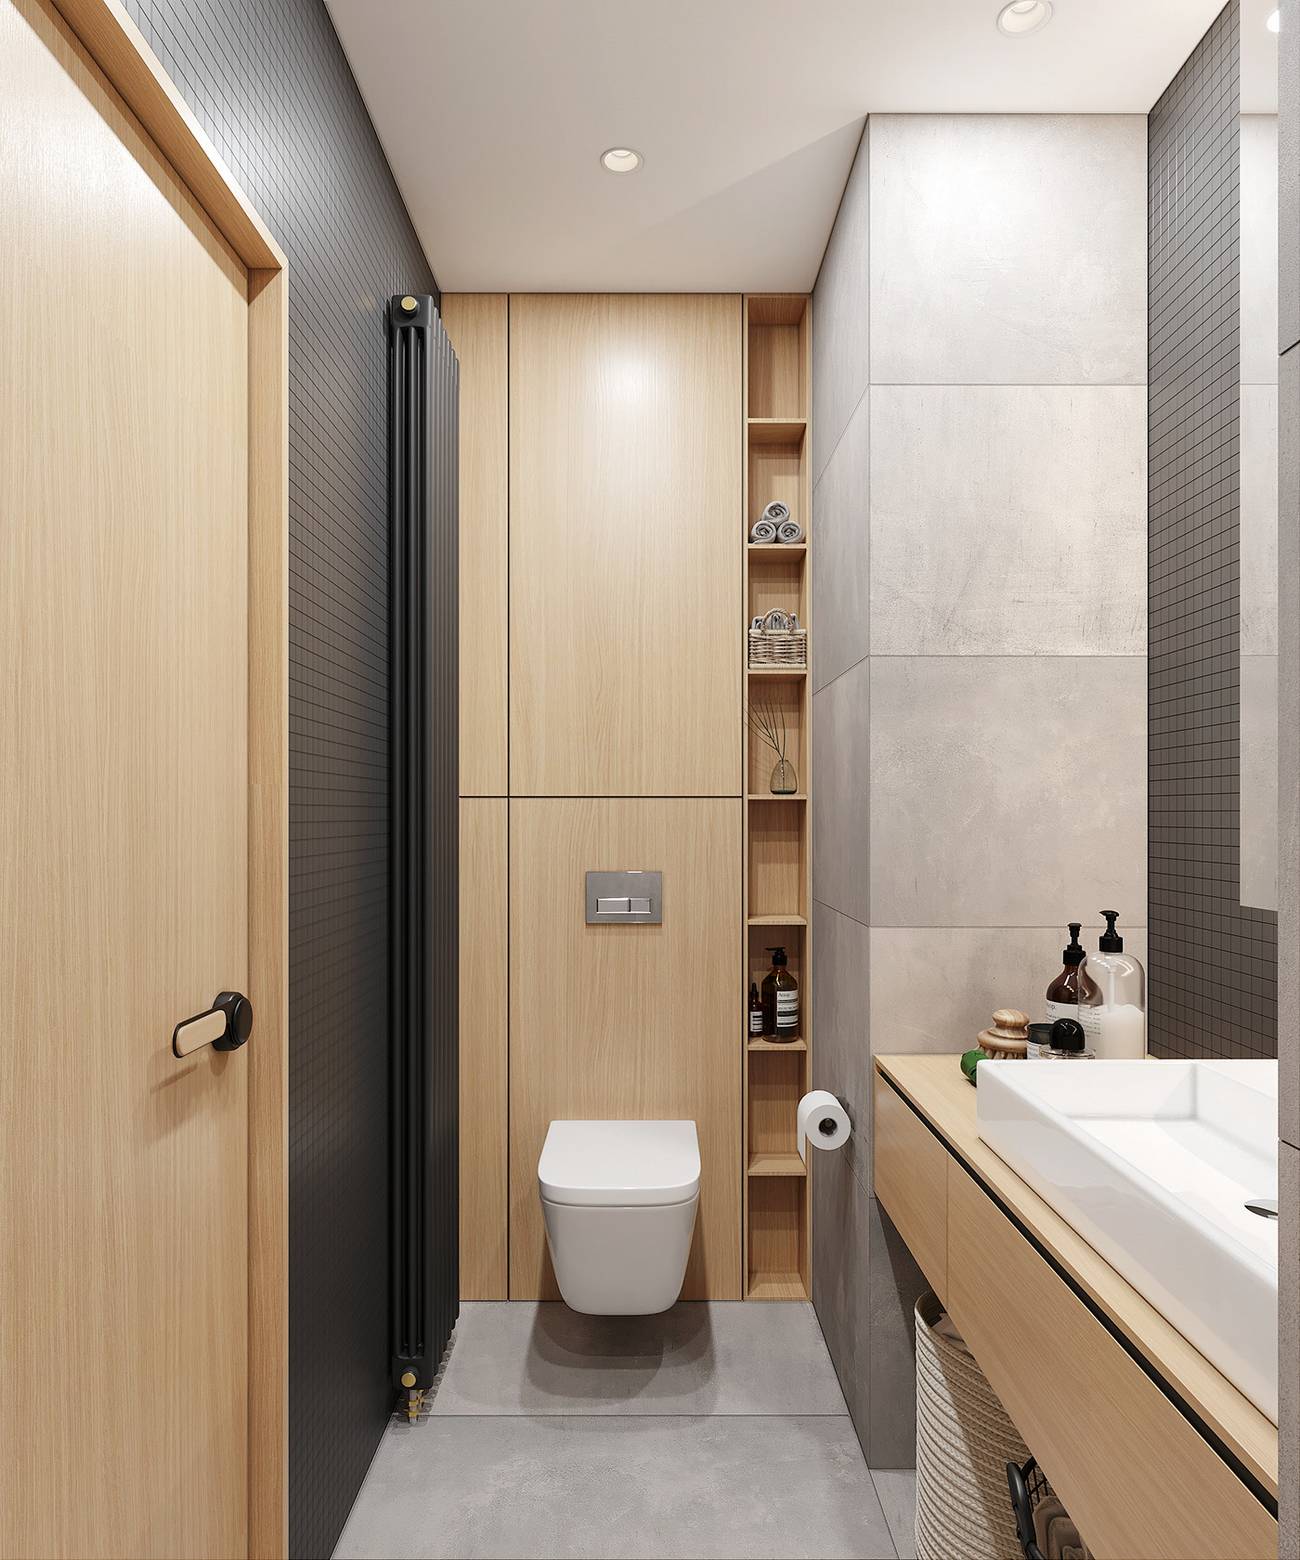 Bồn toilet được thiết kế gắn tường để giải phóng diện tích mặt sàn, bức tường phía sau đồng thời là tủ lưu trữ đẹp mắt với những hốc nhỏ tận dụng để đựng khăn tắm và phụ kiện.